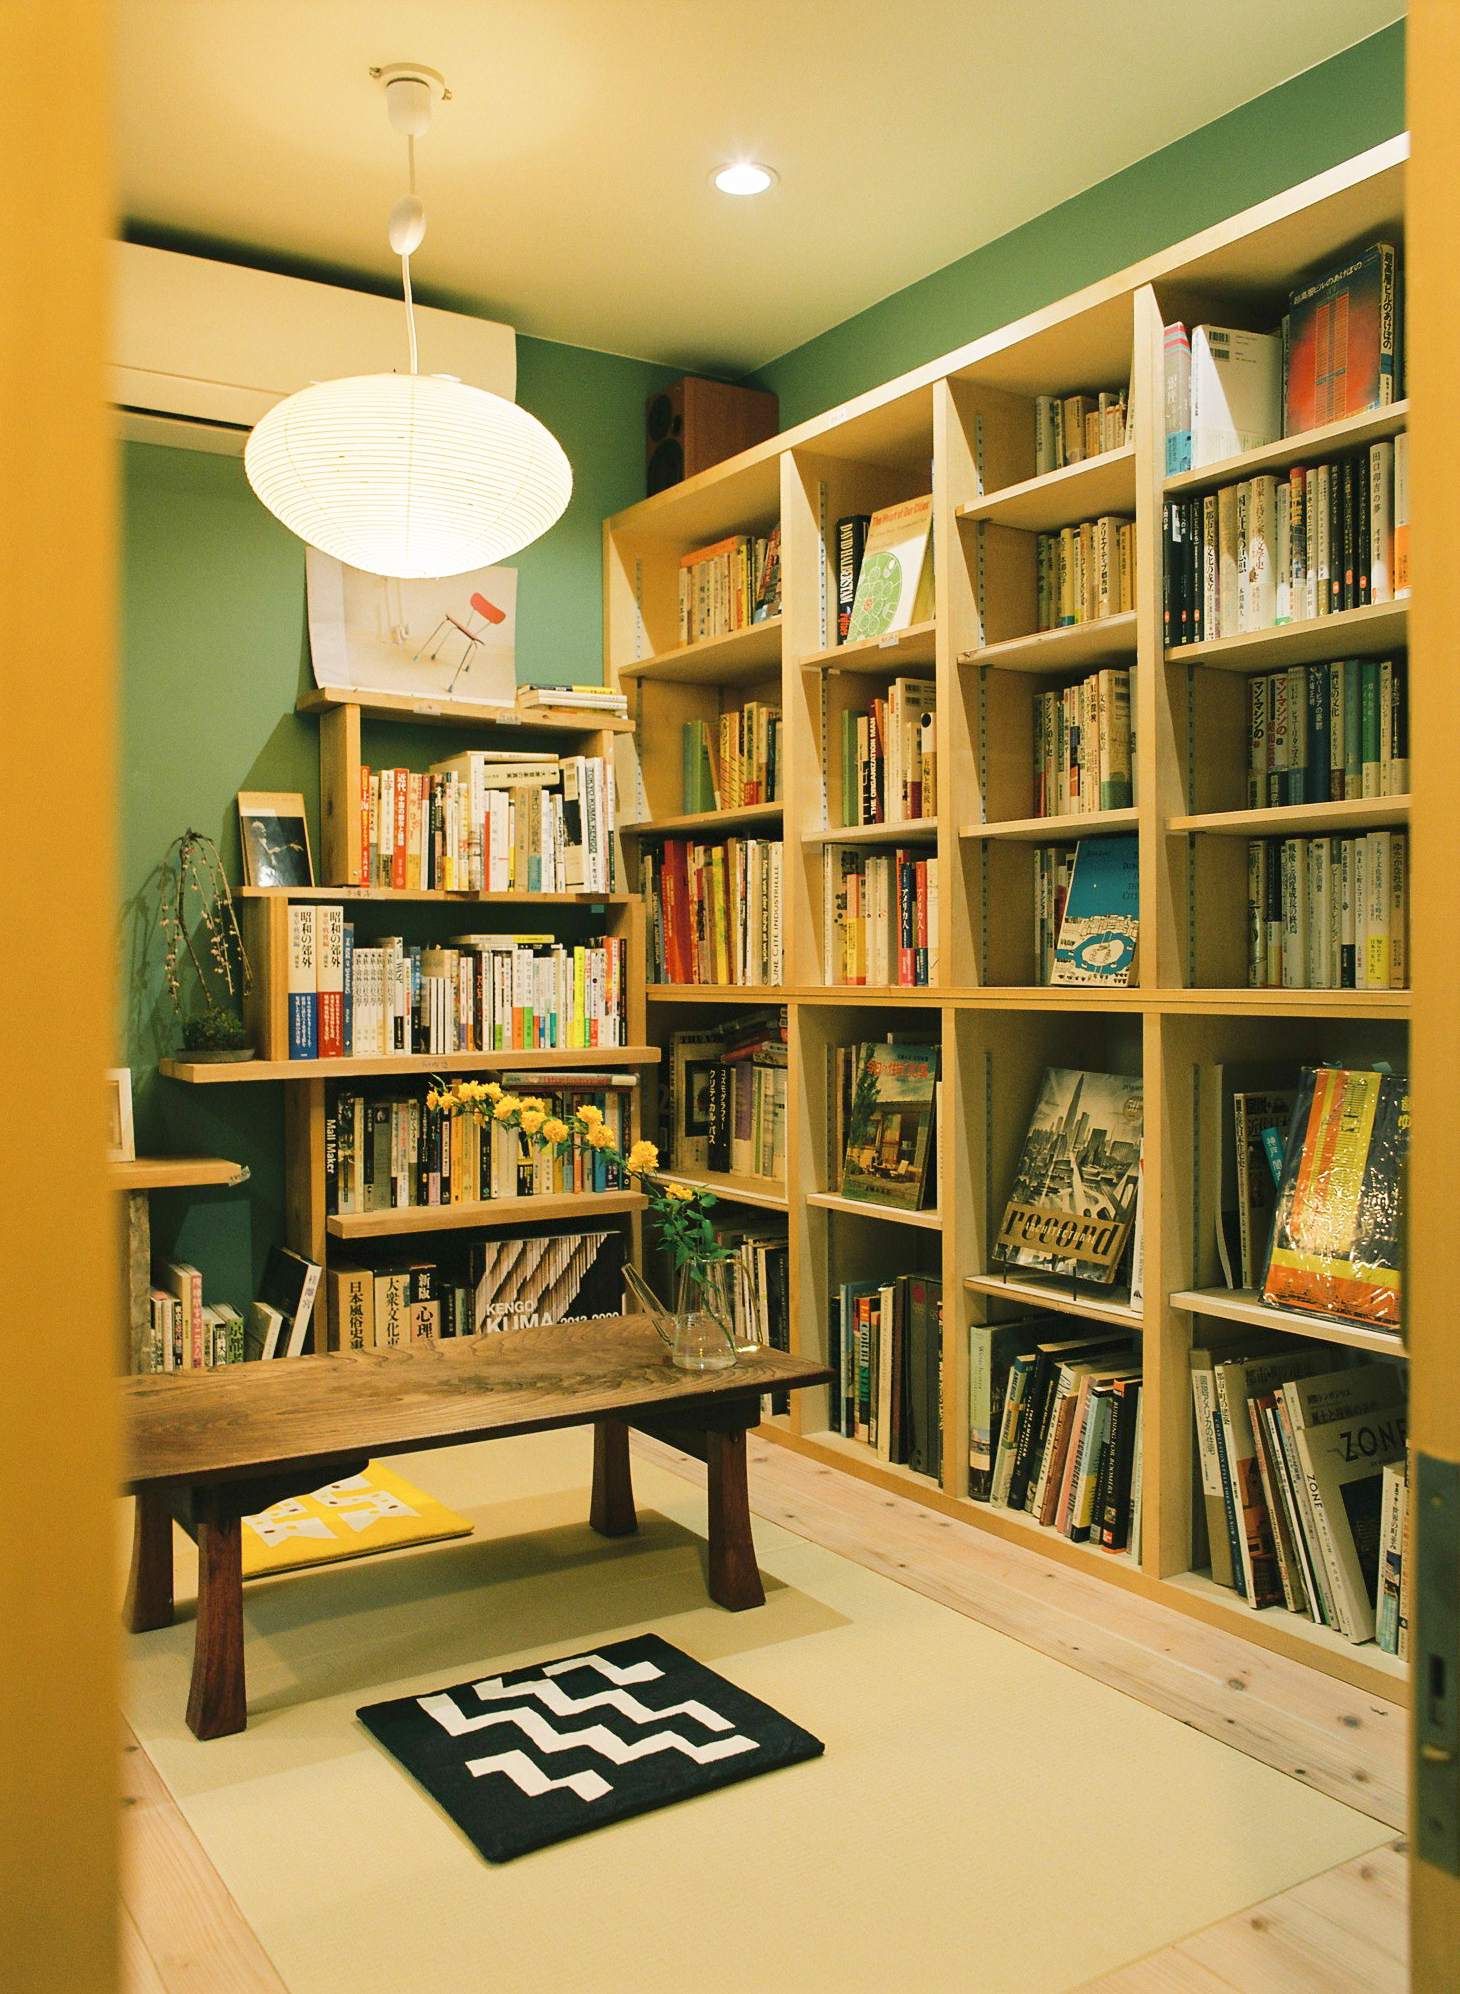 展文庫　京都御所西　都市・文化系の本に囲まれた現代的な和室空間＋屋上